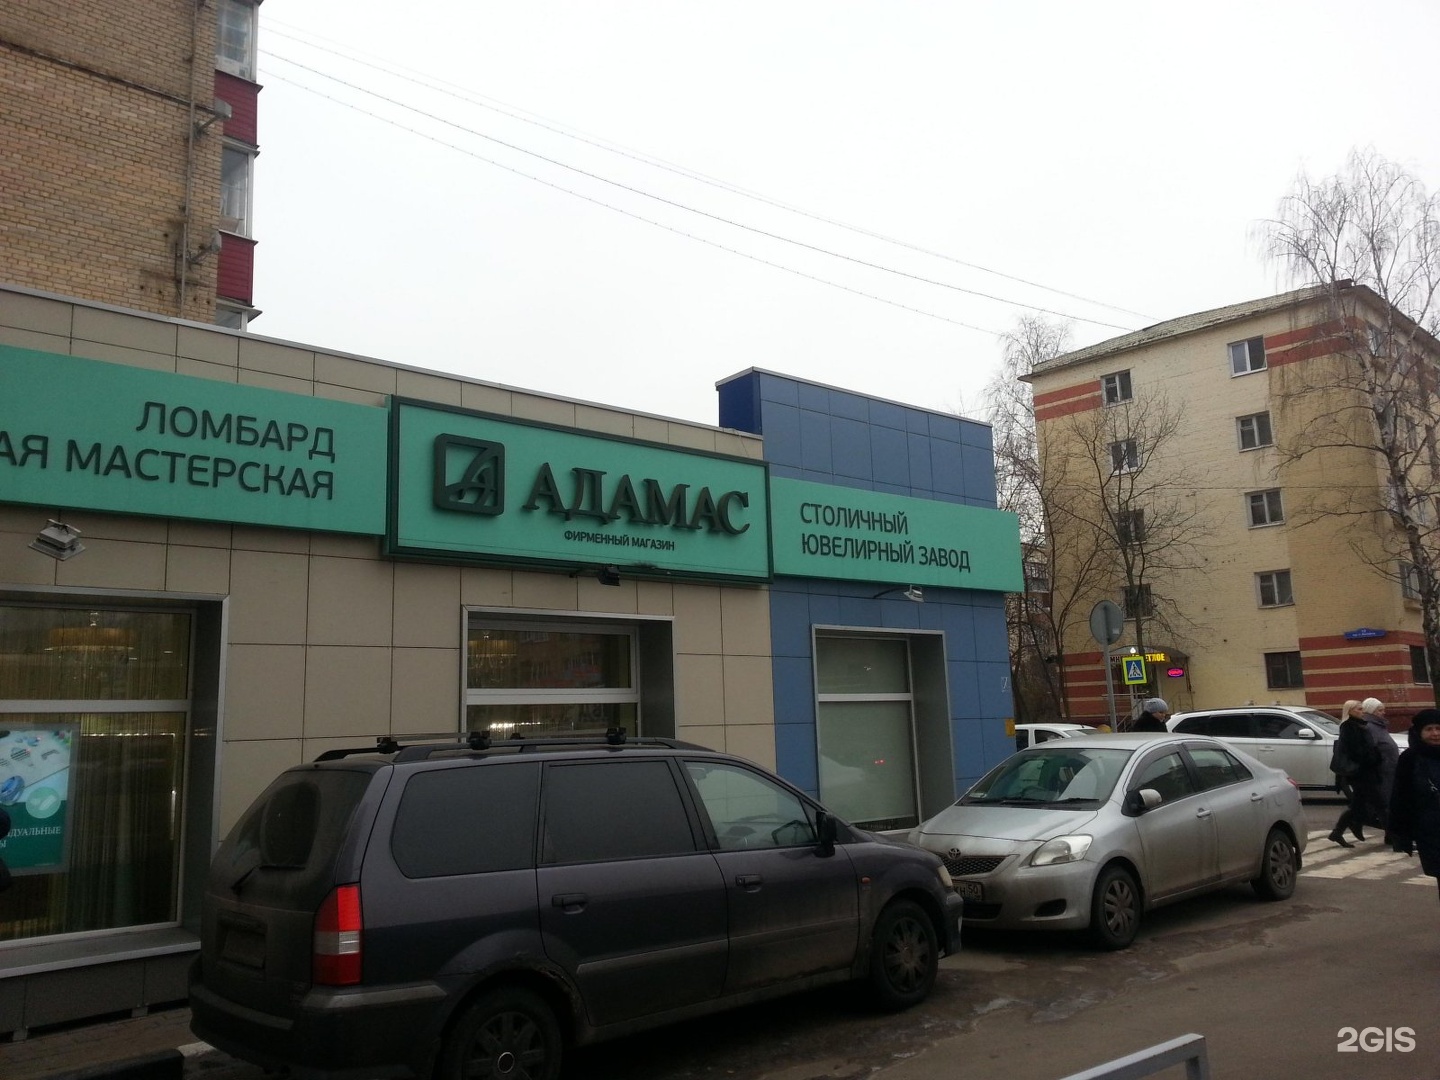 Адамас Екатеринбург Адреса Магазинов